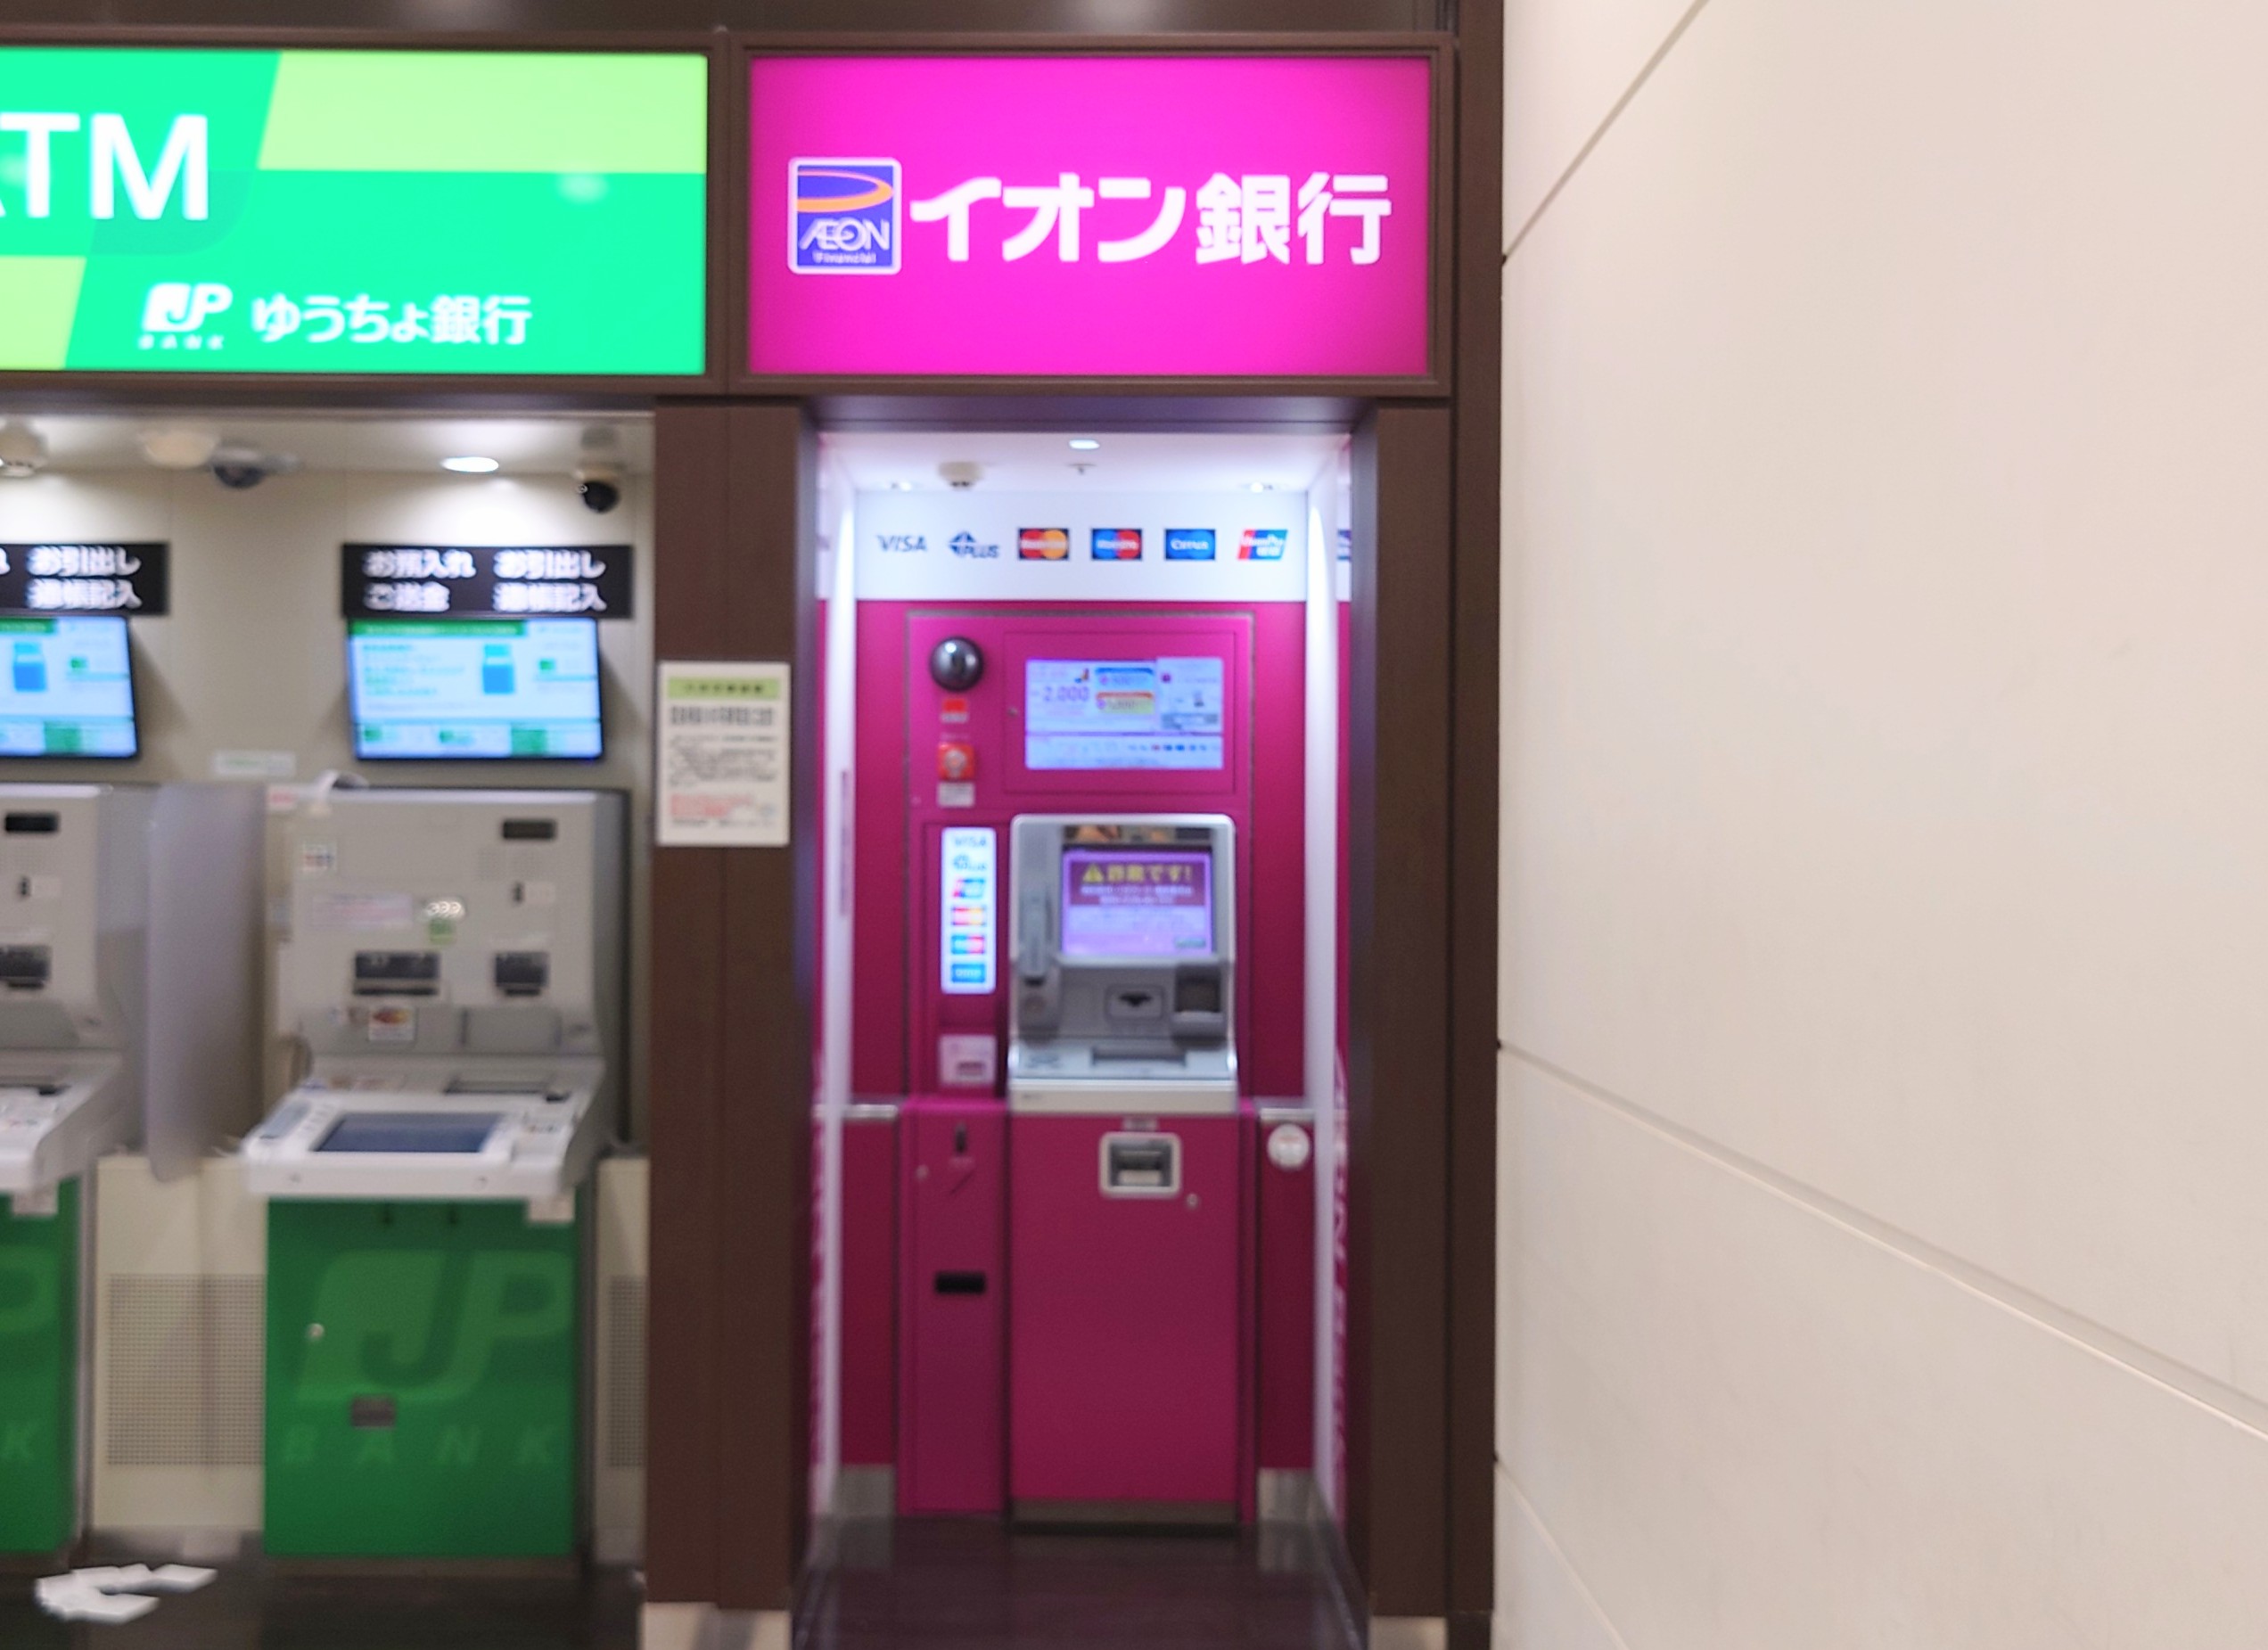 イオン銀行ATM